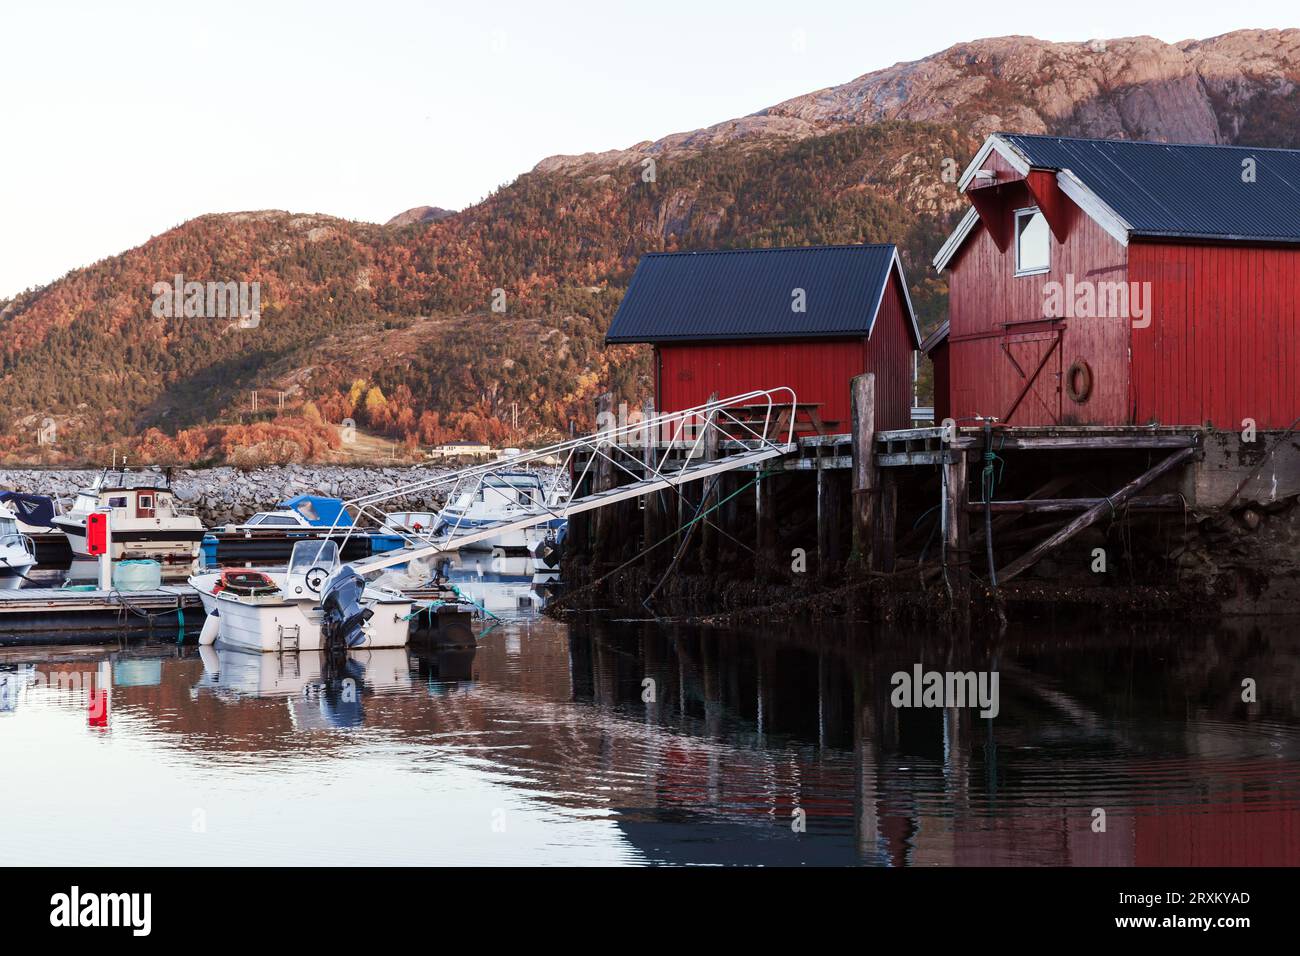 Paysage norvégien avec de vieilles granges en bois rouge sur la côte de la mer. Village de pêcheurs de Vingvagen. Snillfjord, région de Sor-Trondelag Banque D'Images